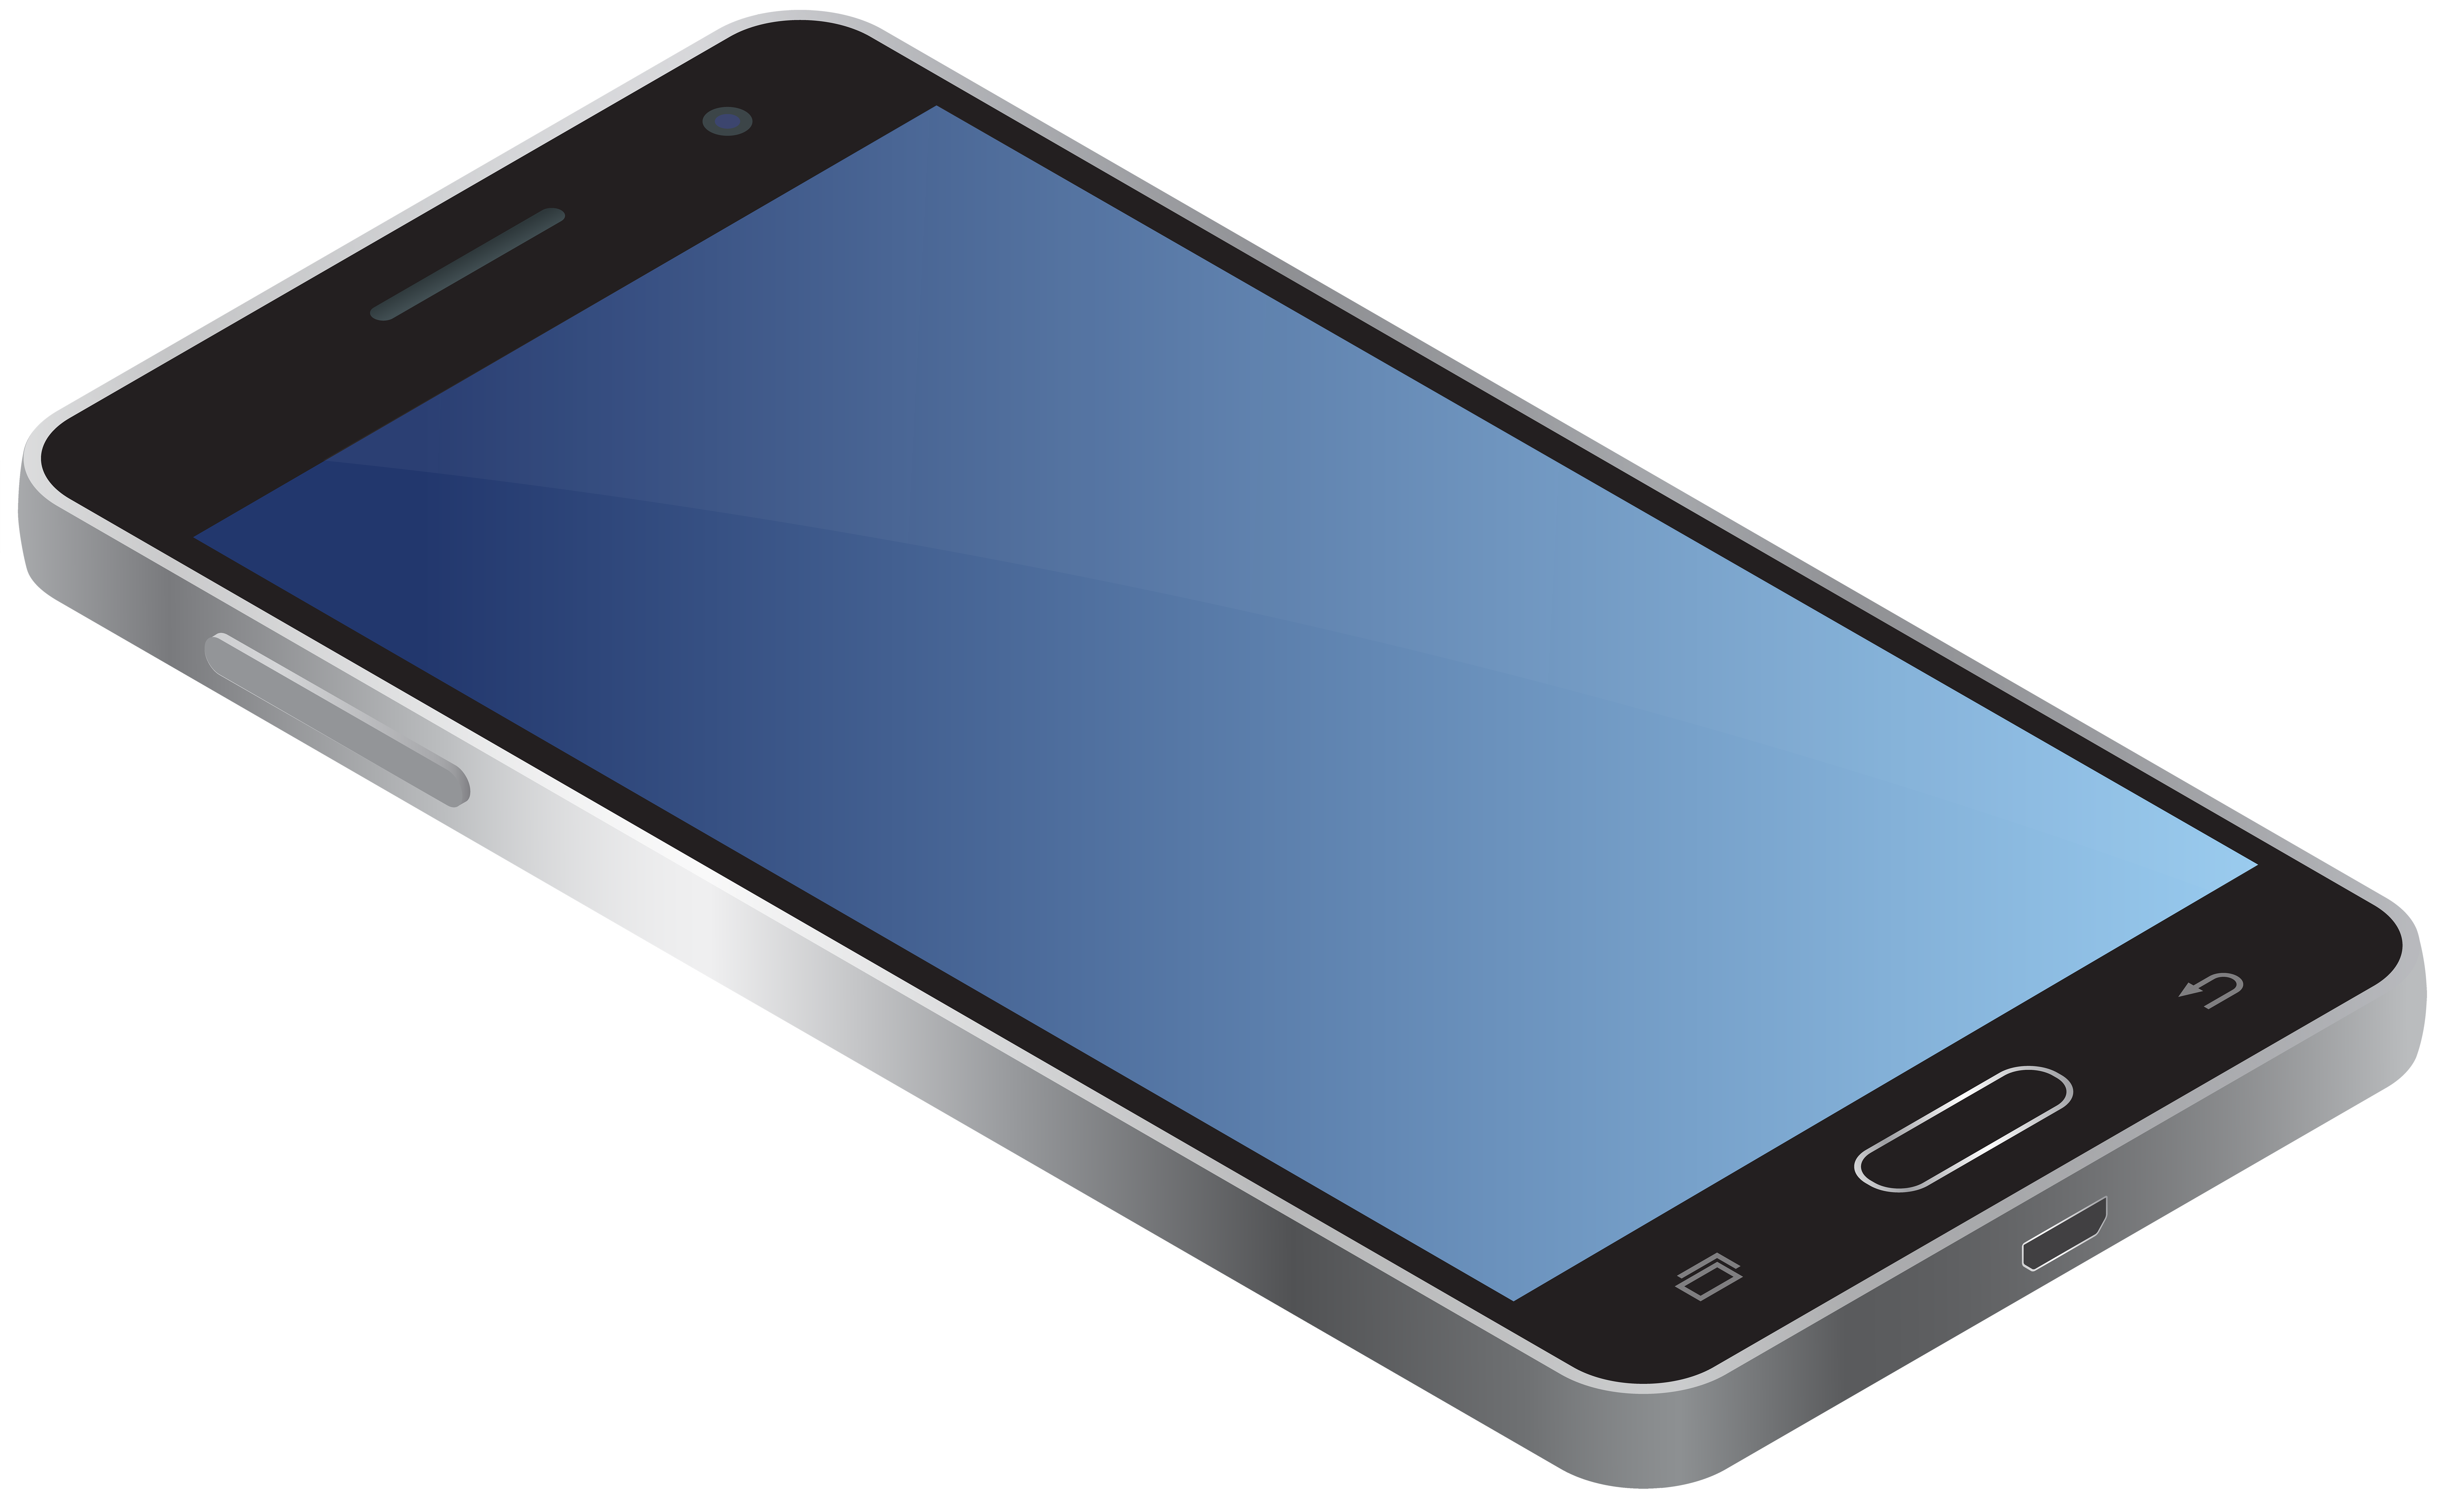 Download Samsung Mobile Phone Clipart Frame Png Imagens De Celular Images And Photos Finder